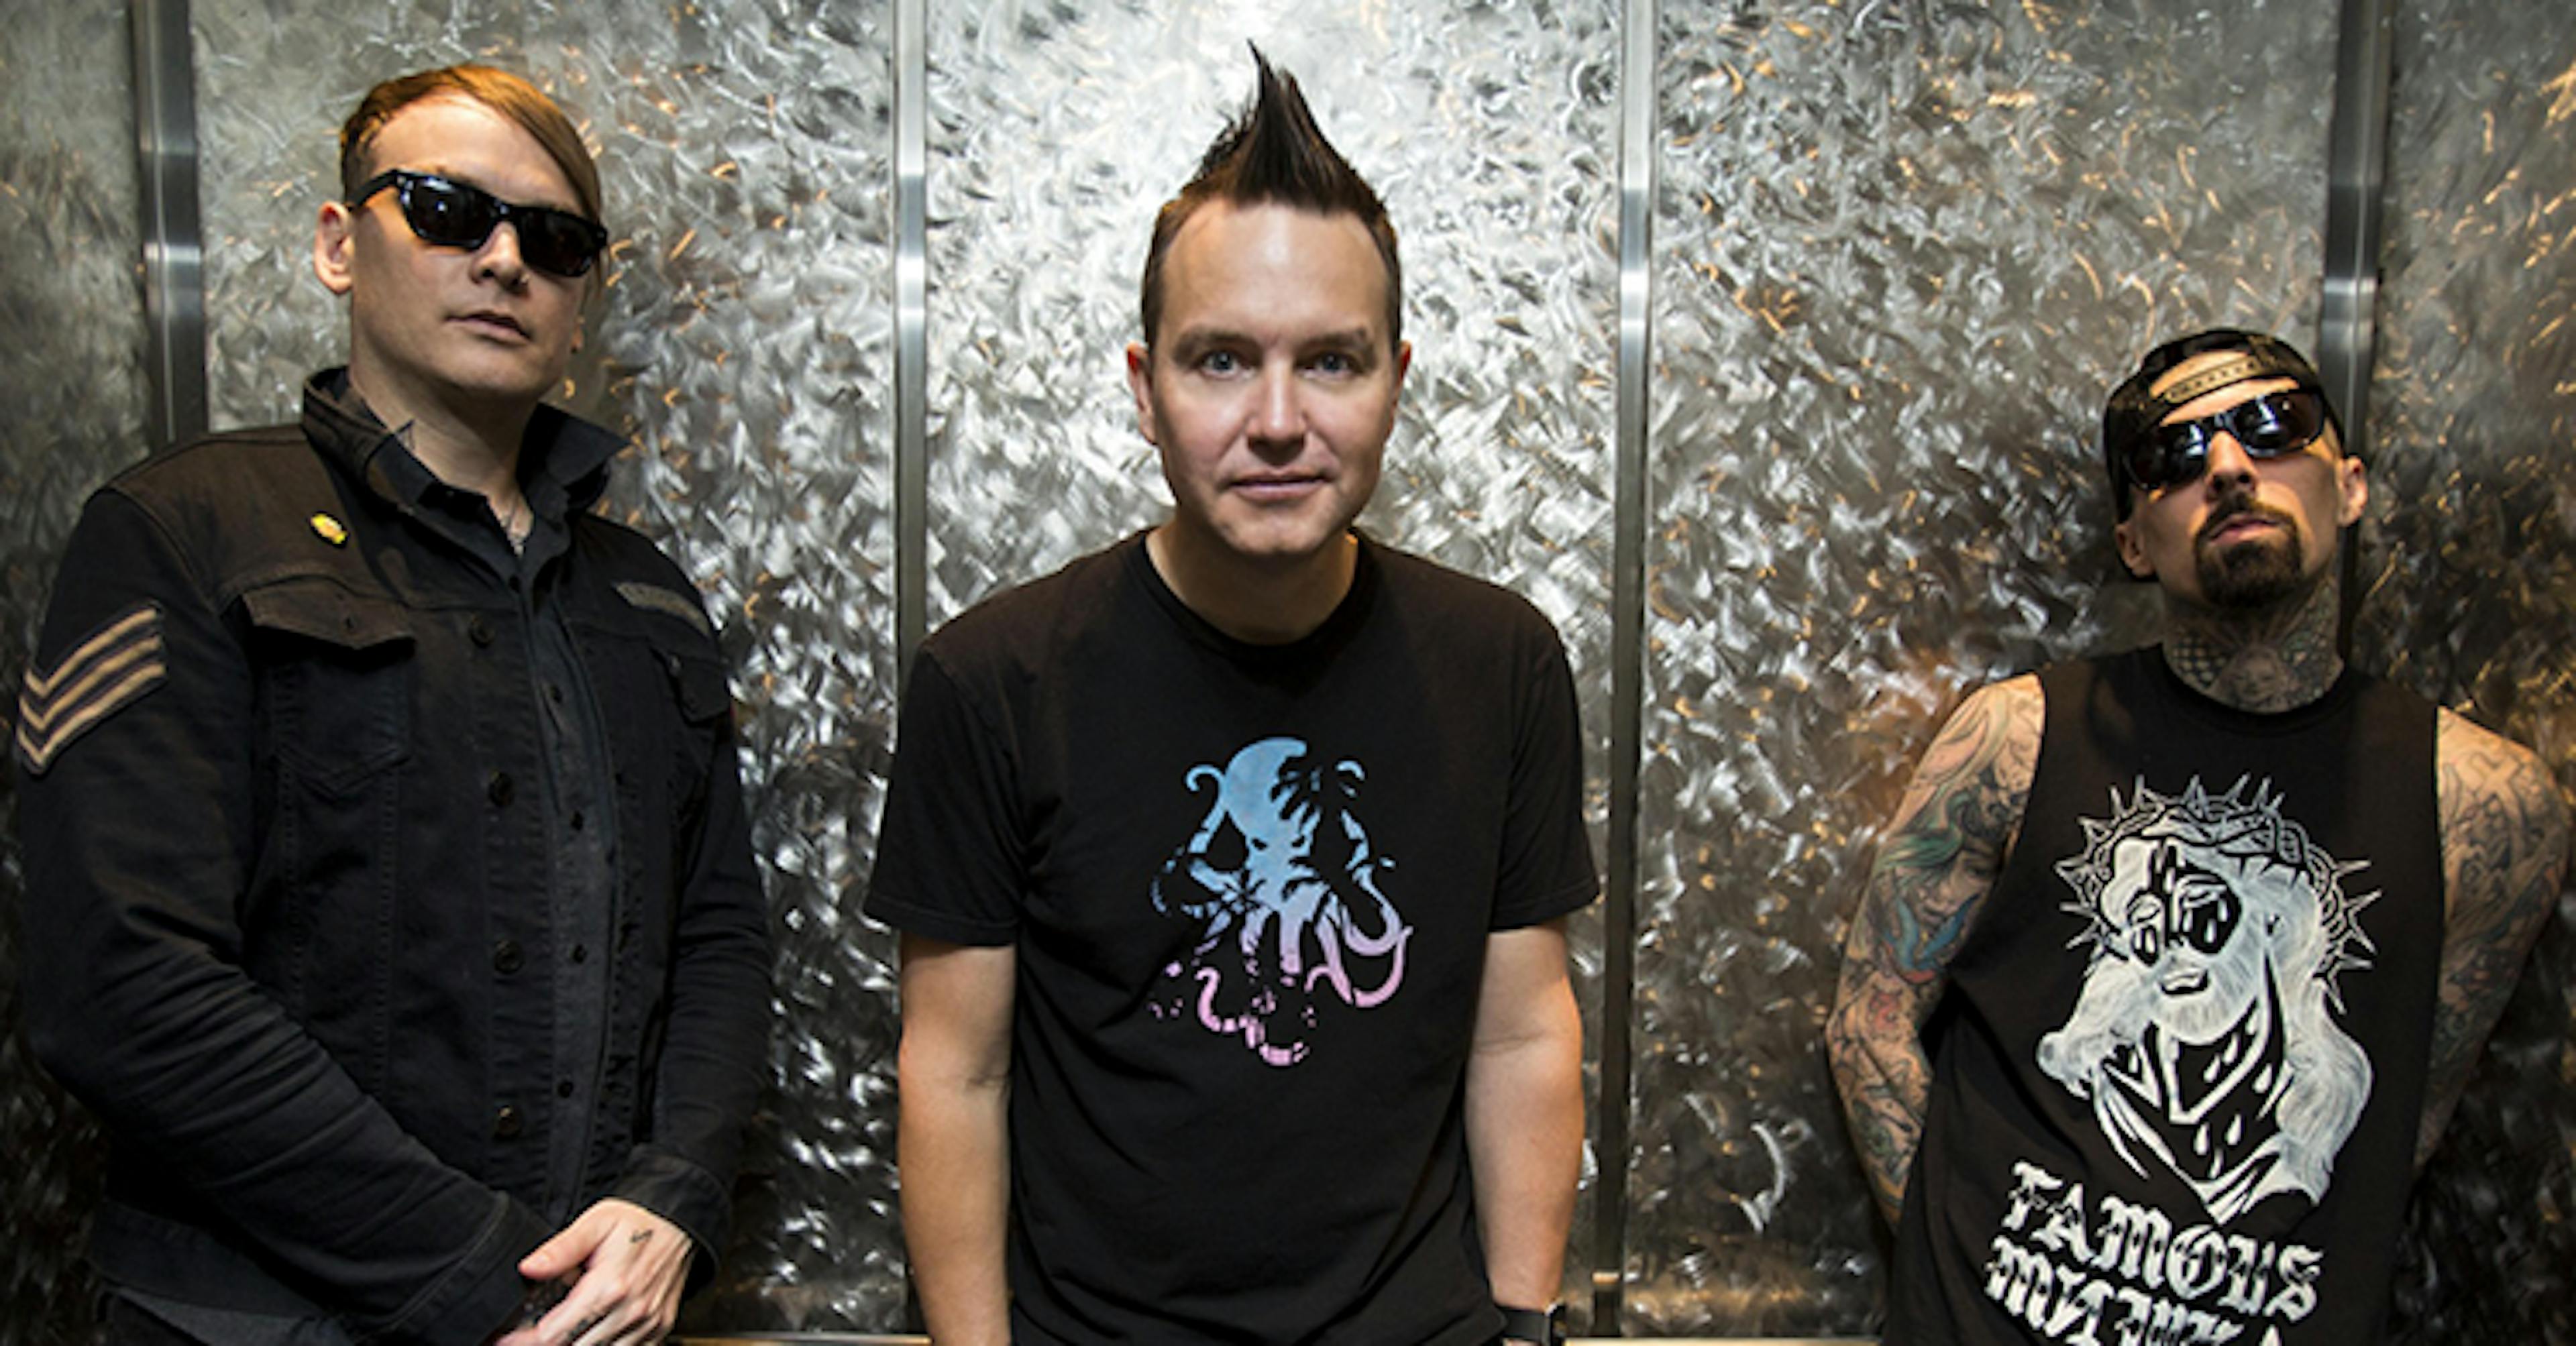 blink-182 Announce Huge UK Headline Tour